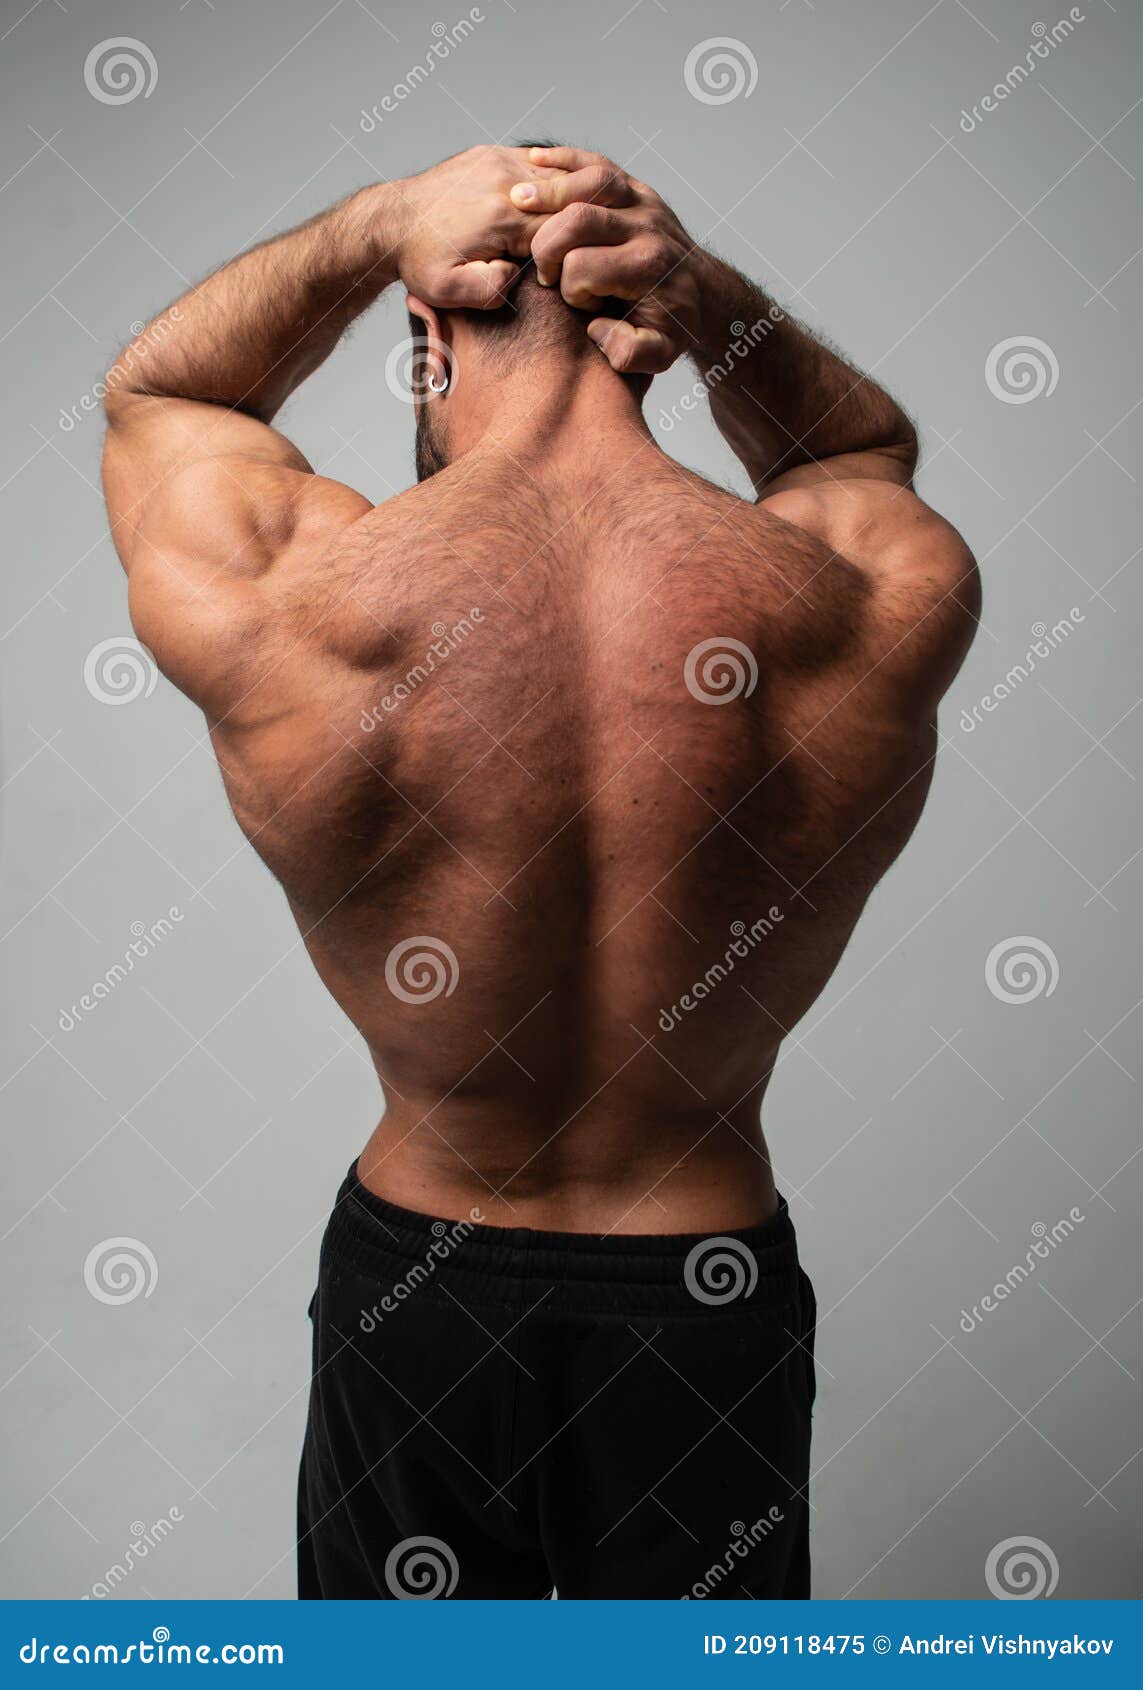 健美男后背. 裸体肌肉男 库存照片. 图片 包括有 体操, 冷静, 方式, 健康, 逗人喜爱, 残酷地 - 222251356